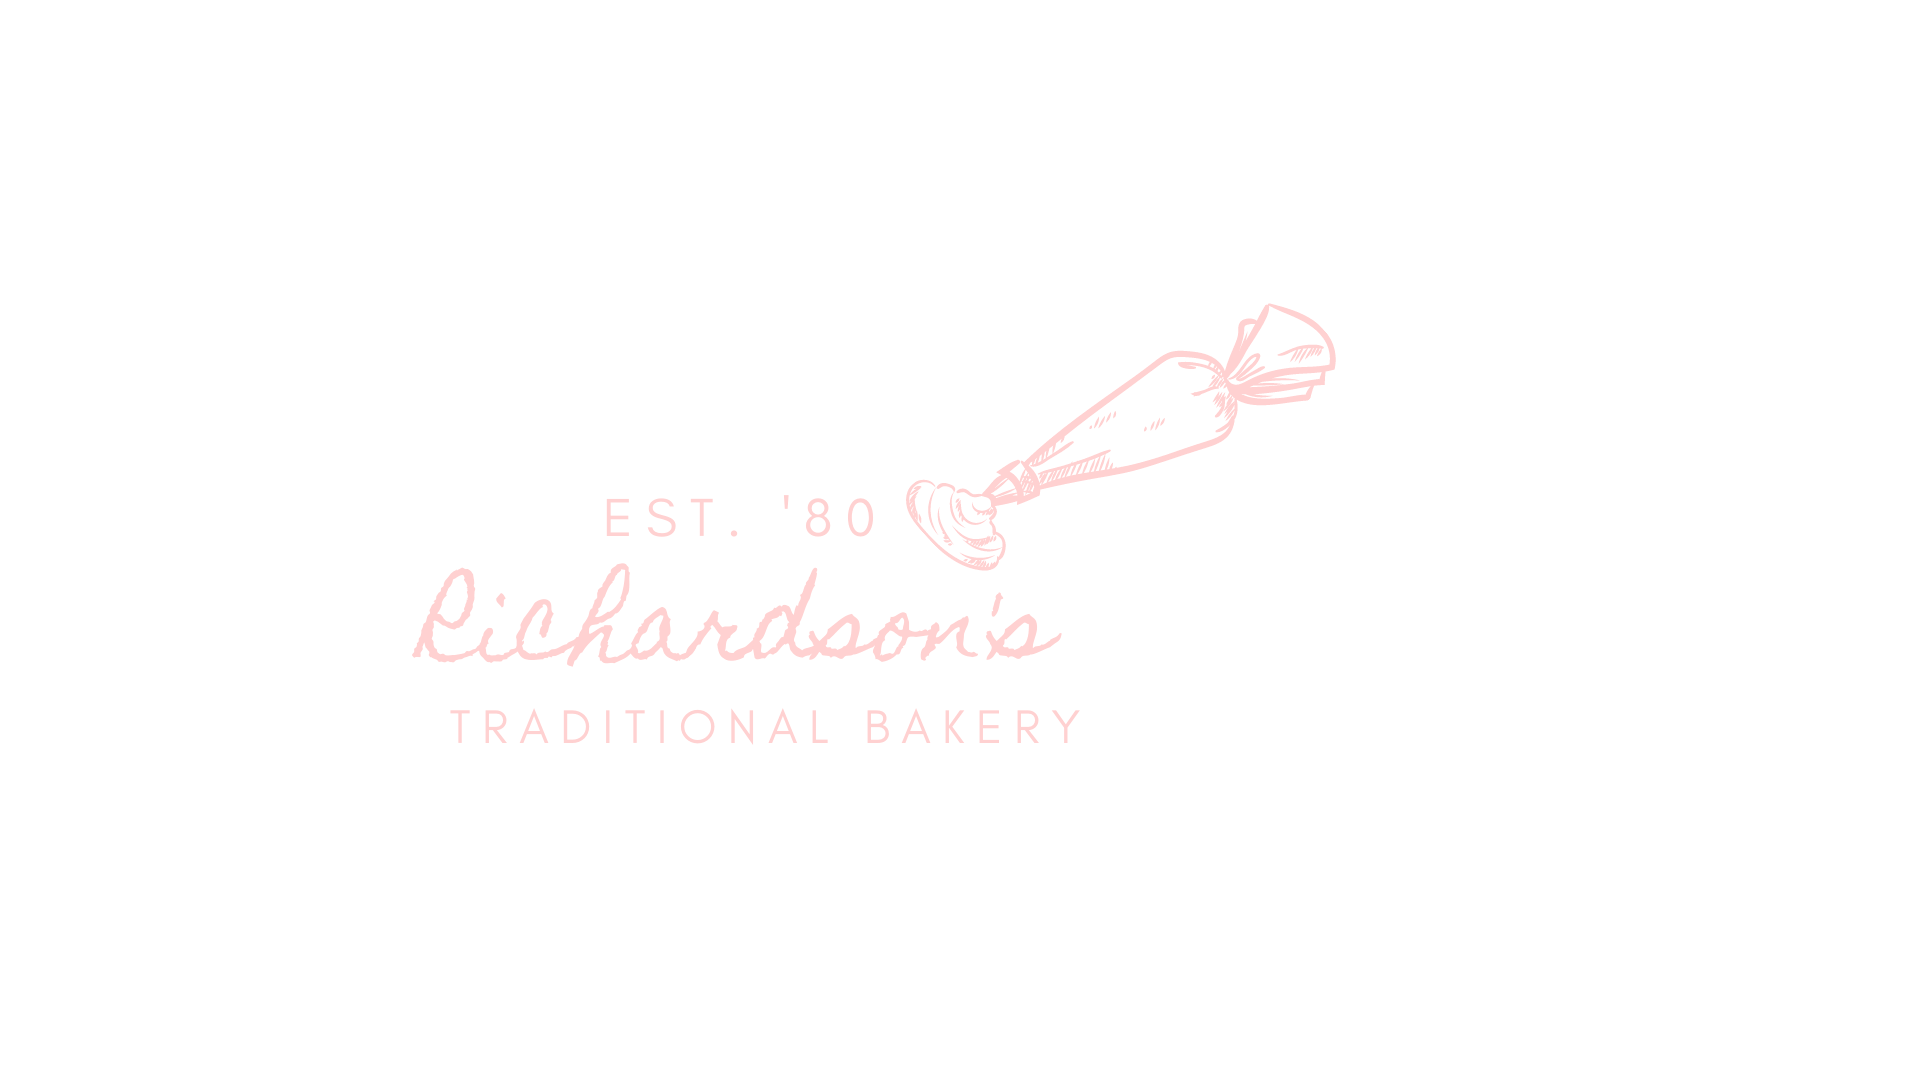 Pink logo in cursive writting